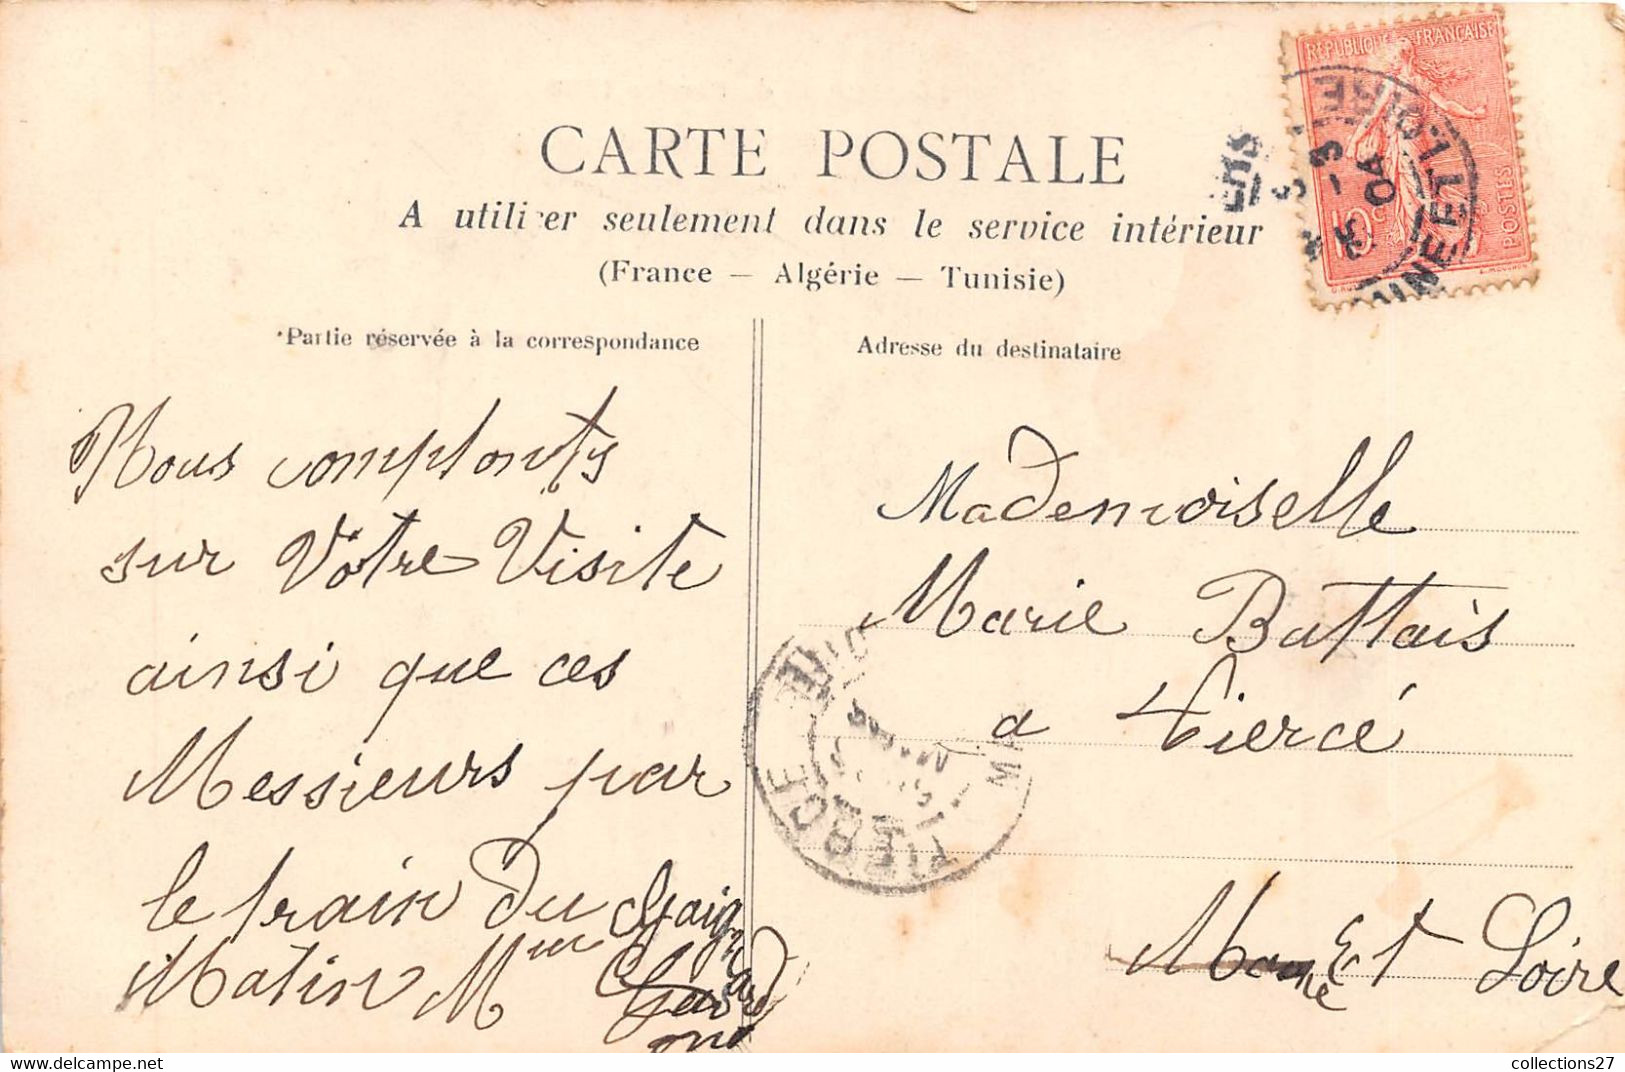 49-LES-PONTS-DE-CE- INONDATION DE FEVRIER 1904- VIEILLE RUE DE L'ILE SAINT-MAURILLE - Les Ponts De Ce